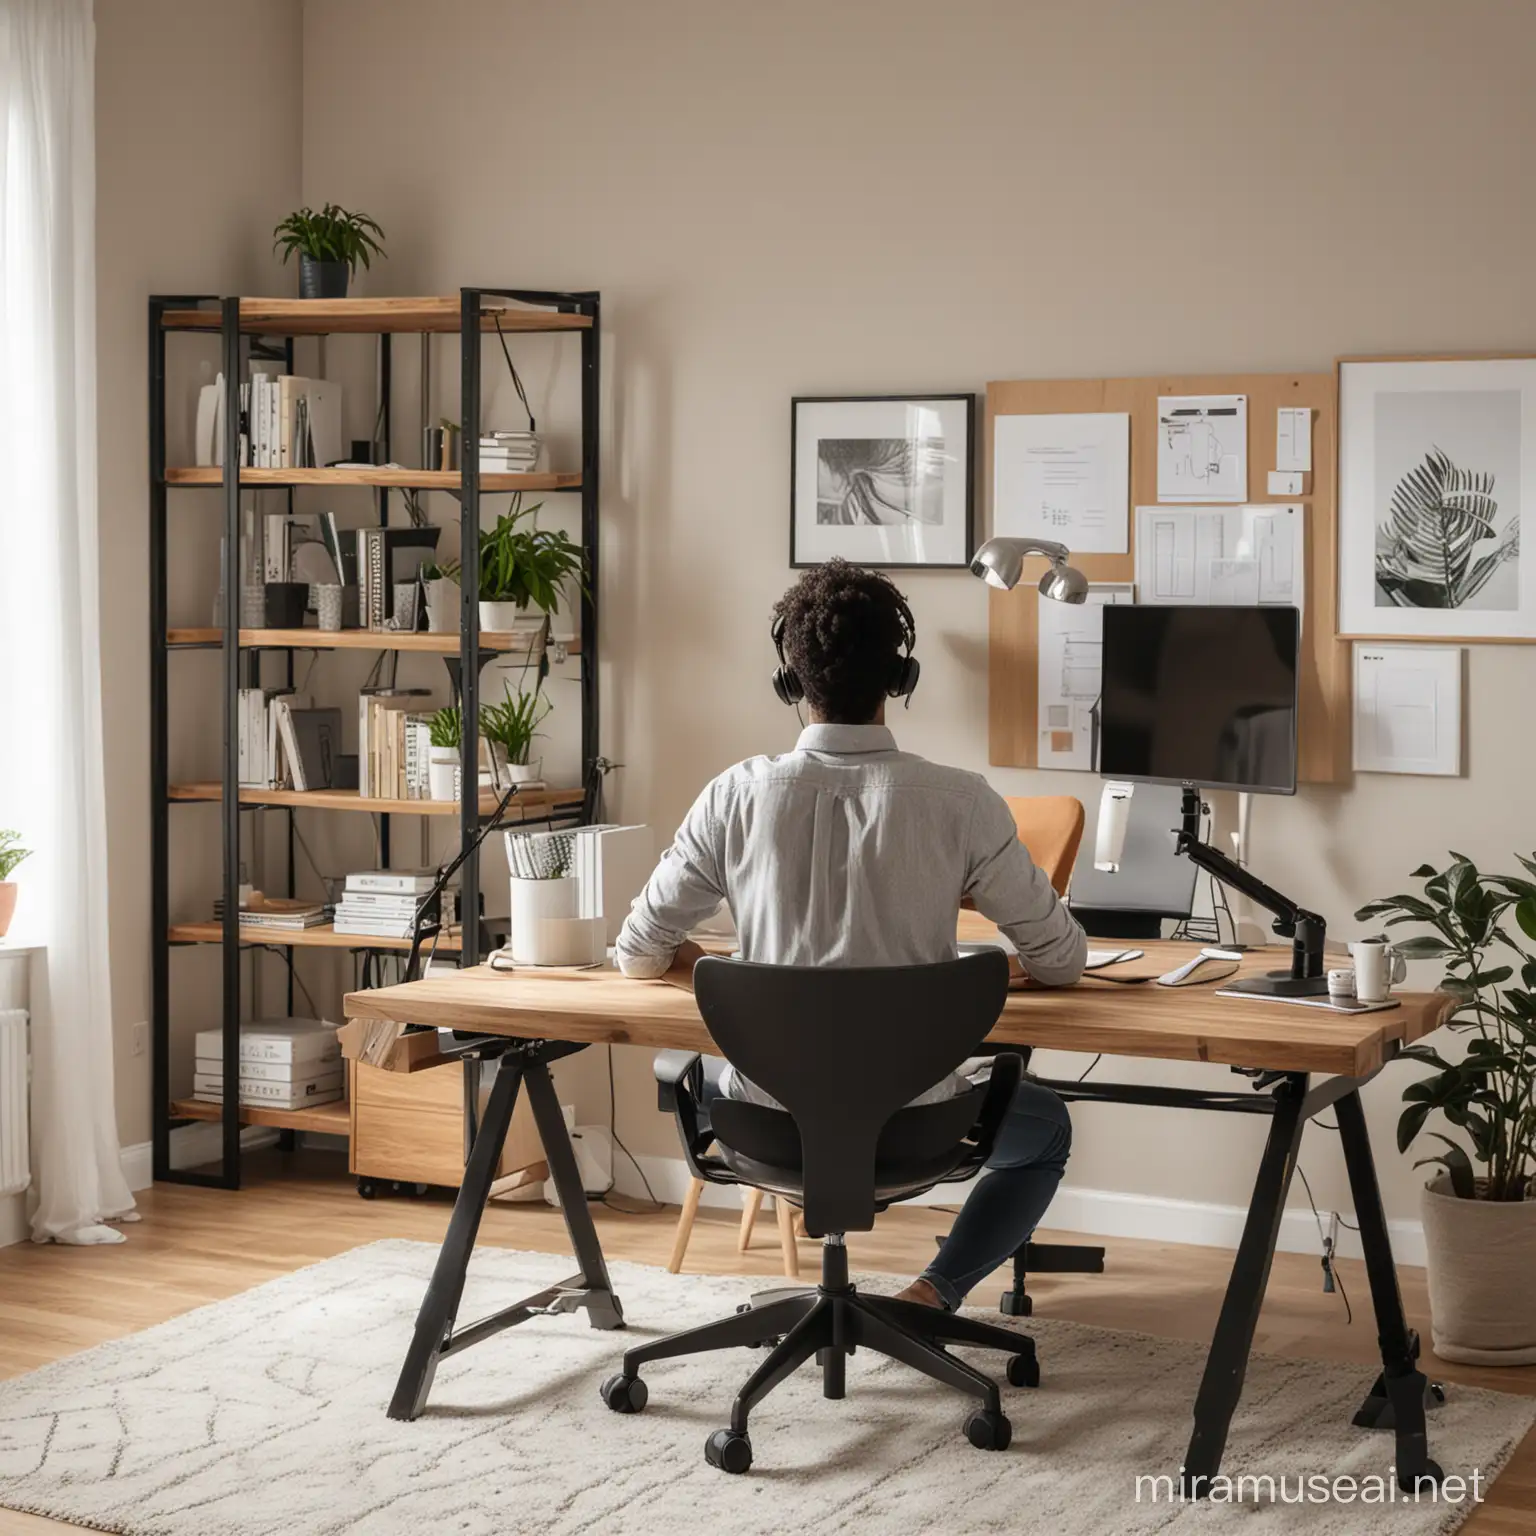 persona sentada ergonomicamente trabajando en la oficina de su hogar 